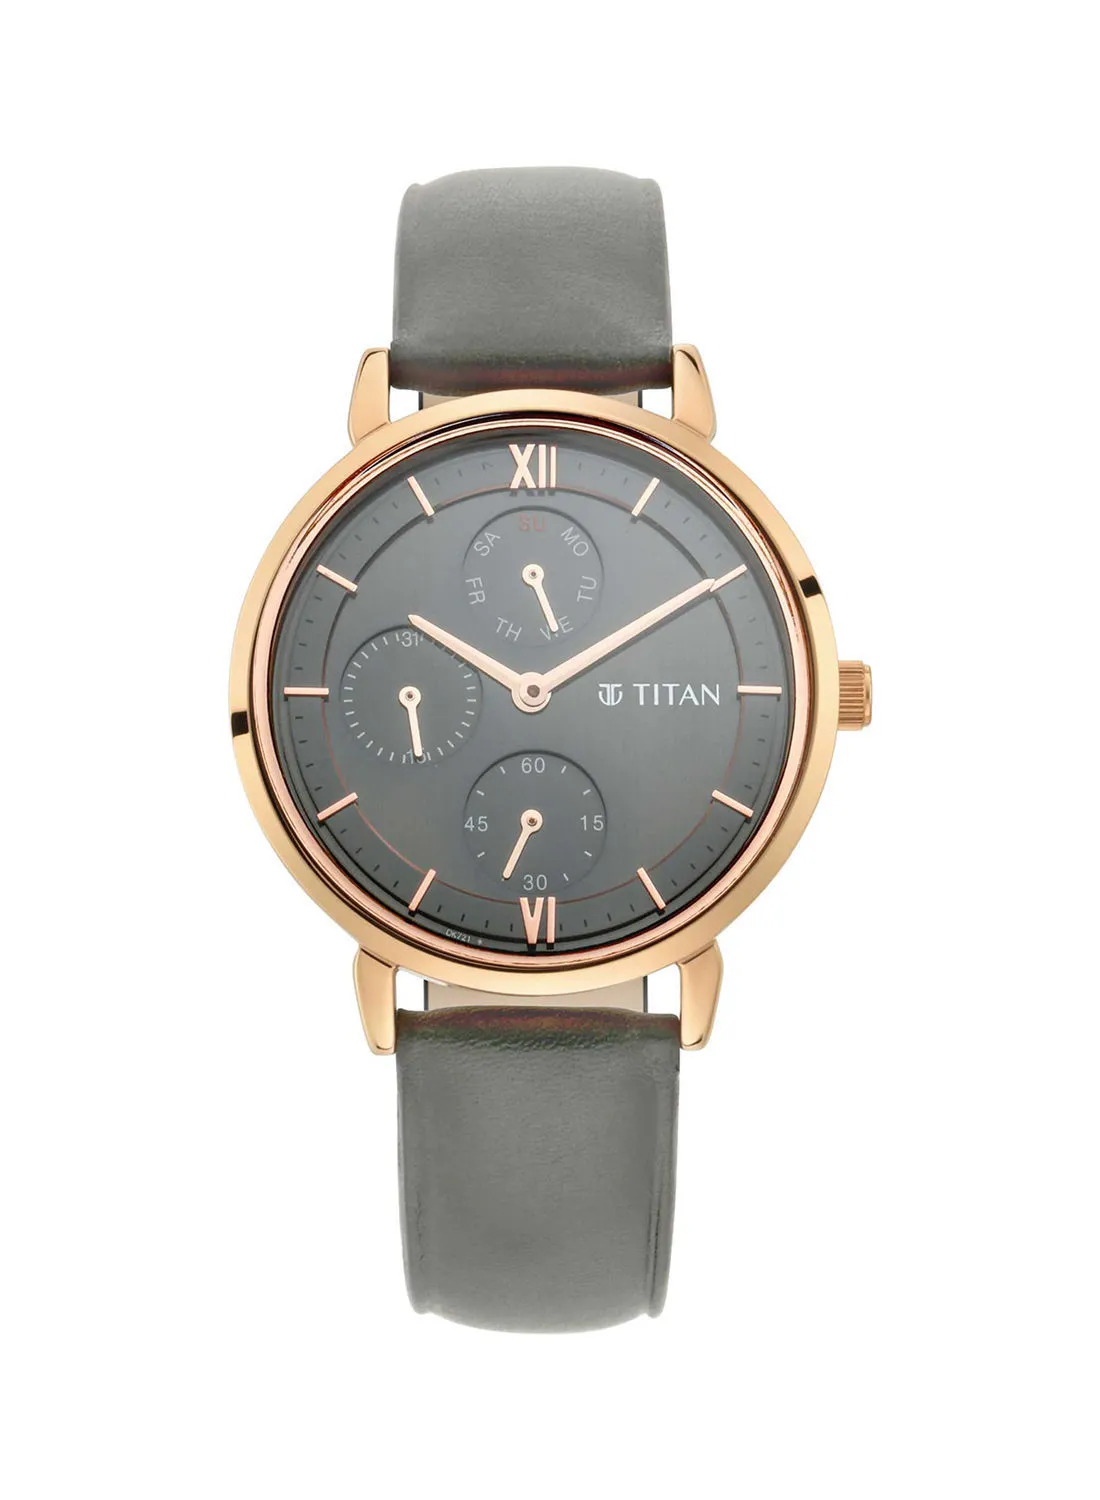 TITAN Leather Analog Wrist Watch 2652WL02